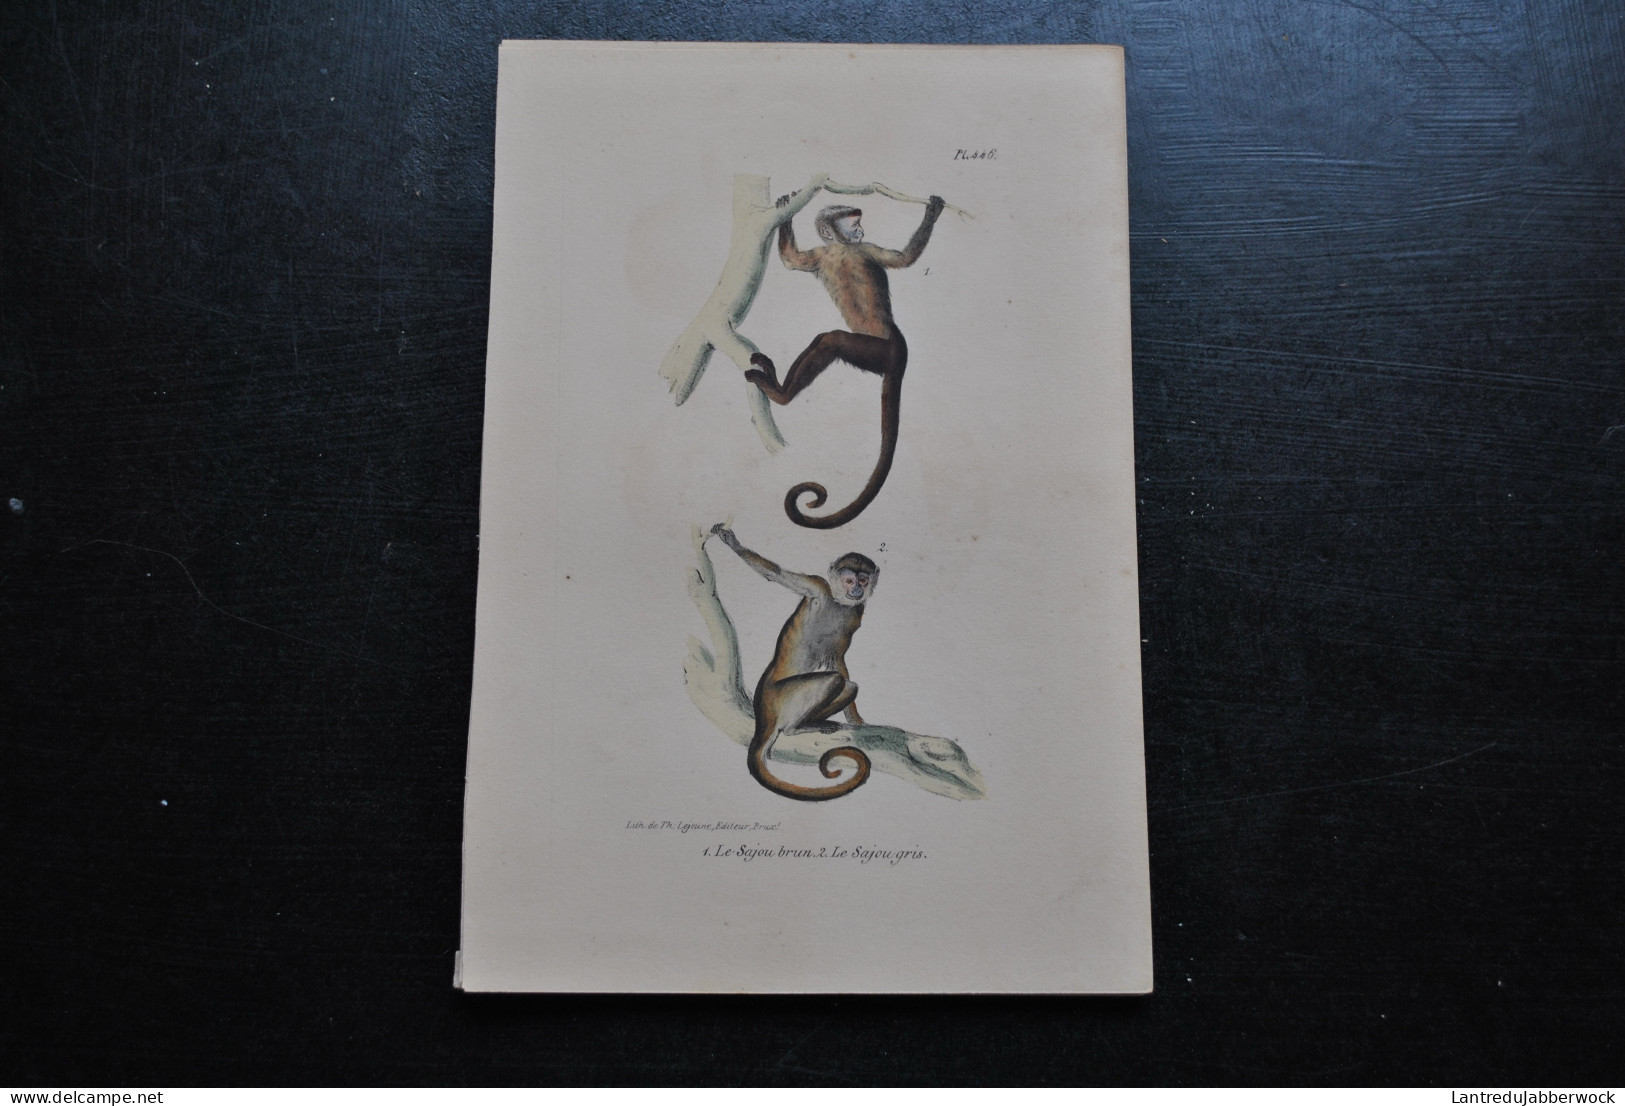 Gravure Couleurs (23 X 16 Cm) Buffon Sajou Brun Et Gris Primate Singe Cabinet De Curiosités Lejeune Bruxelles 1833 - Prenten & Gravure